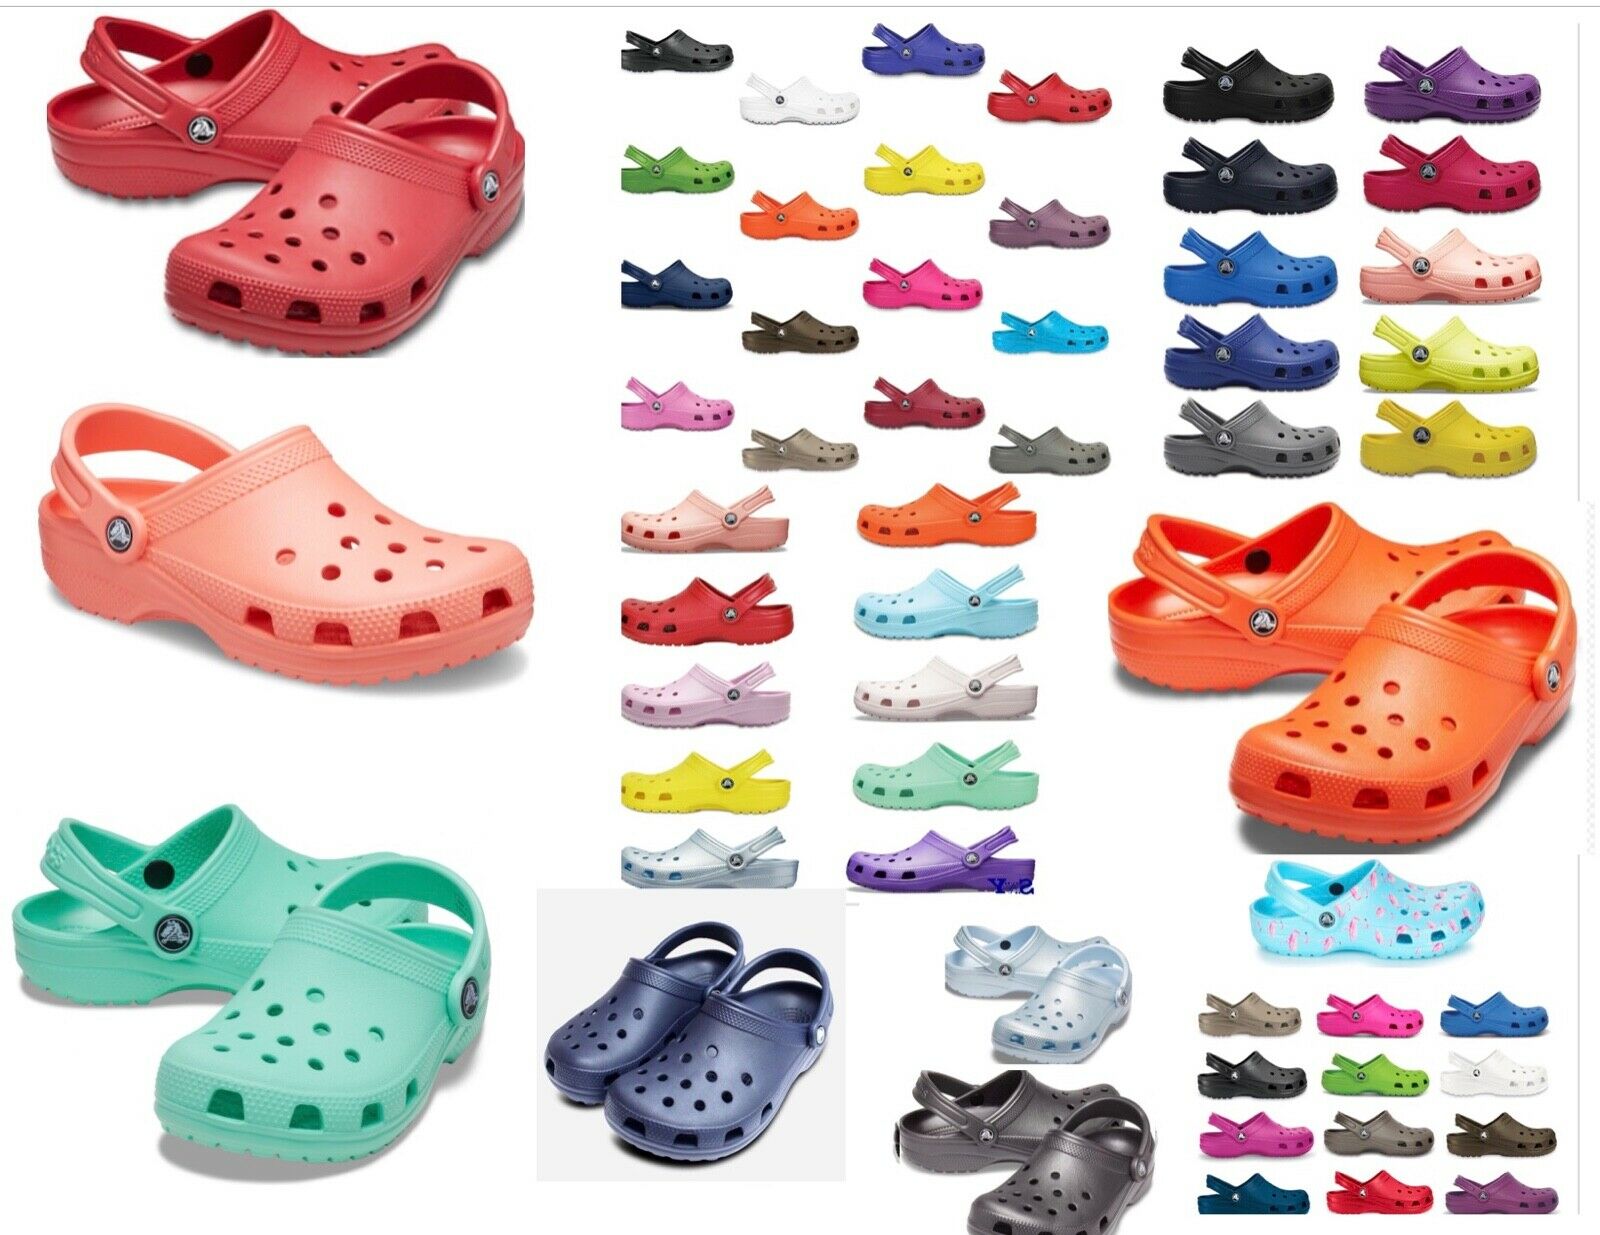 35+ Colors, Crocs Original Classic Clogs Shoes Sandals Sizes  4-17, Vegan